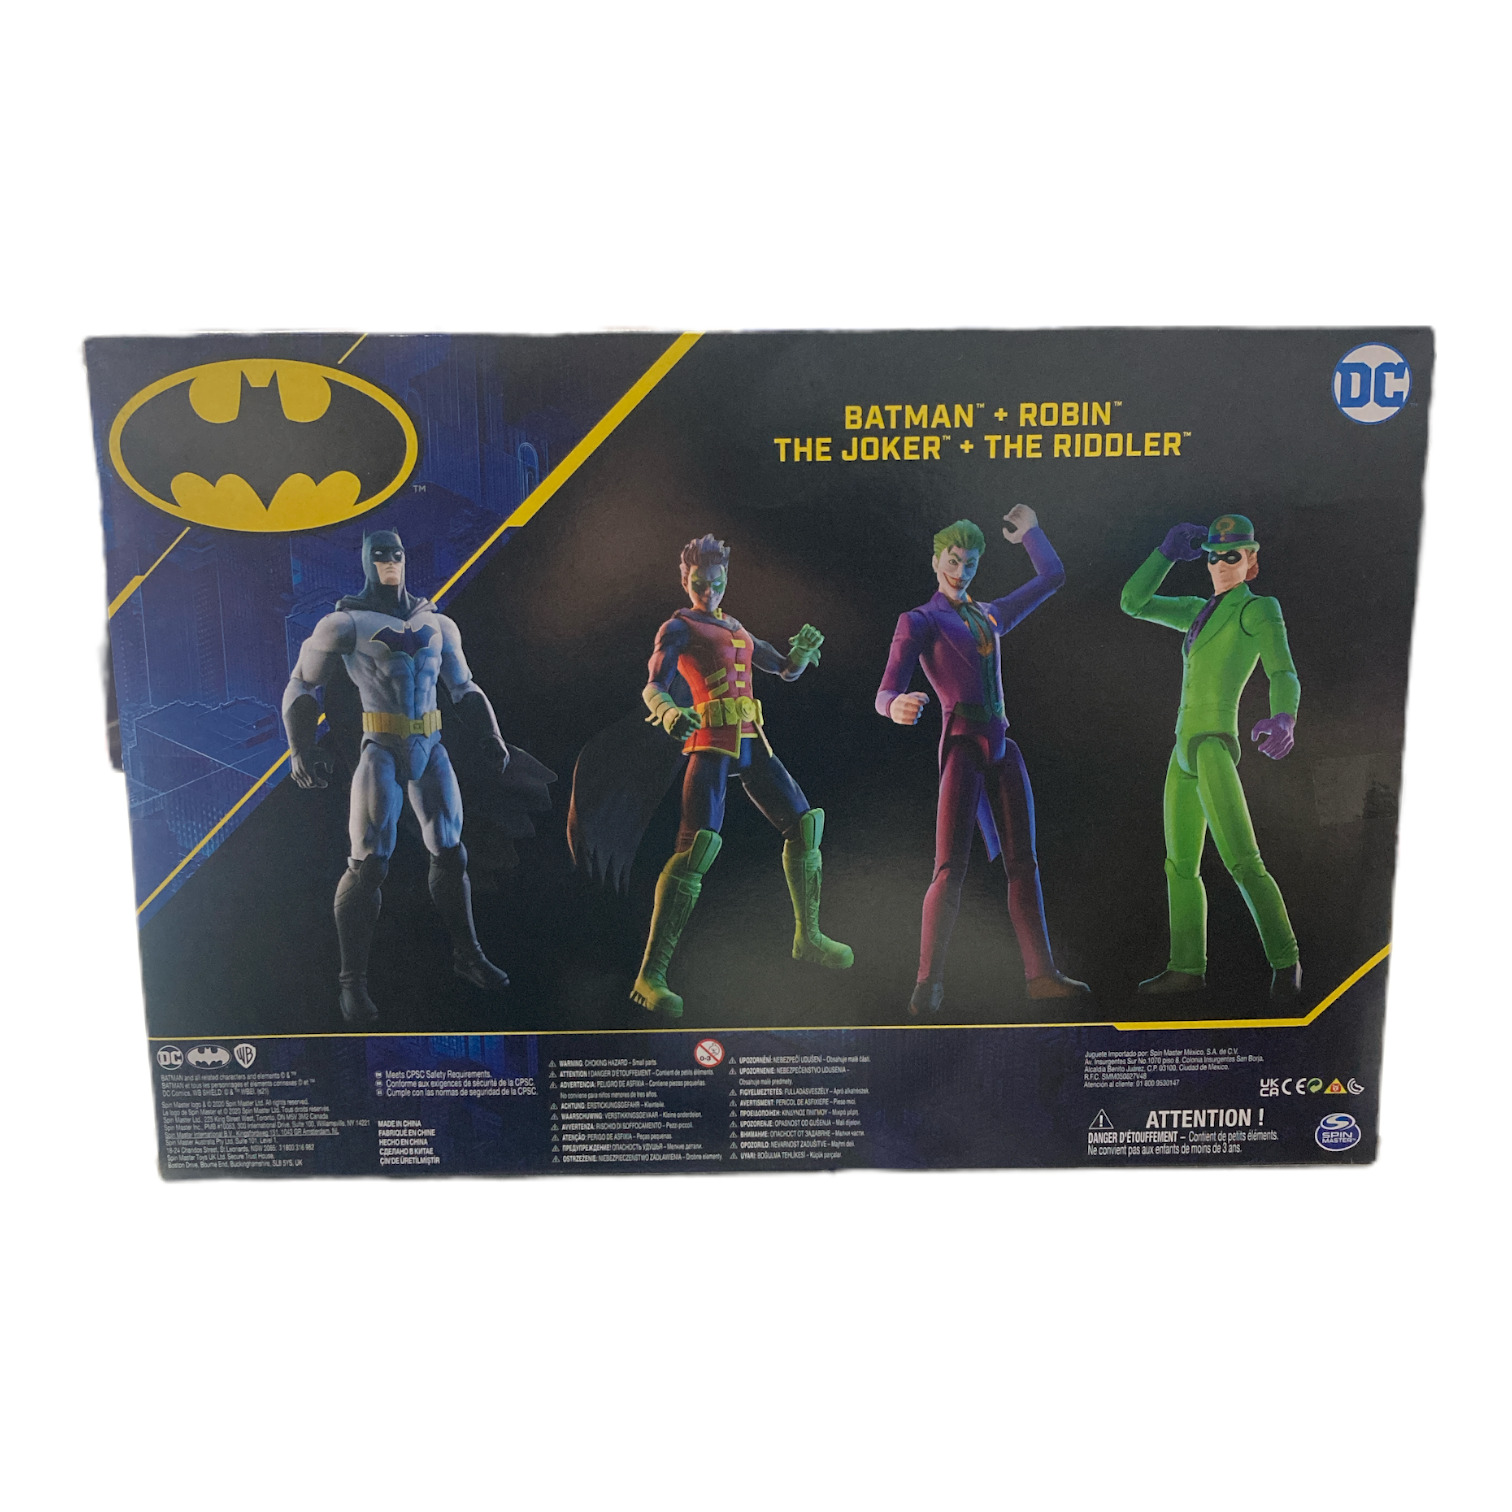 Batman 4-Pack Action Figures, Batman, Robin, The Joker, The Riddler -  